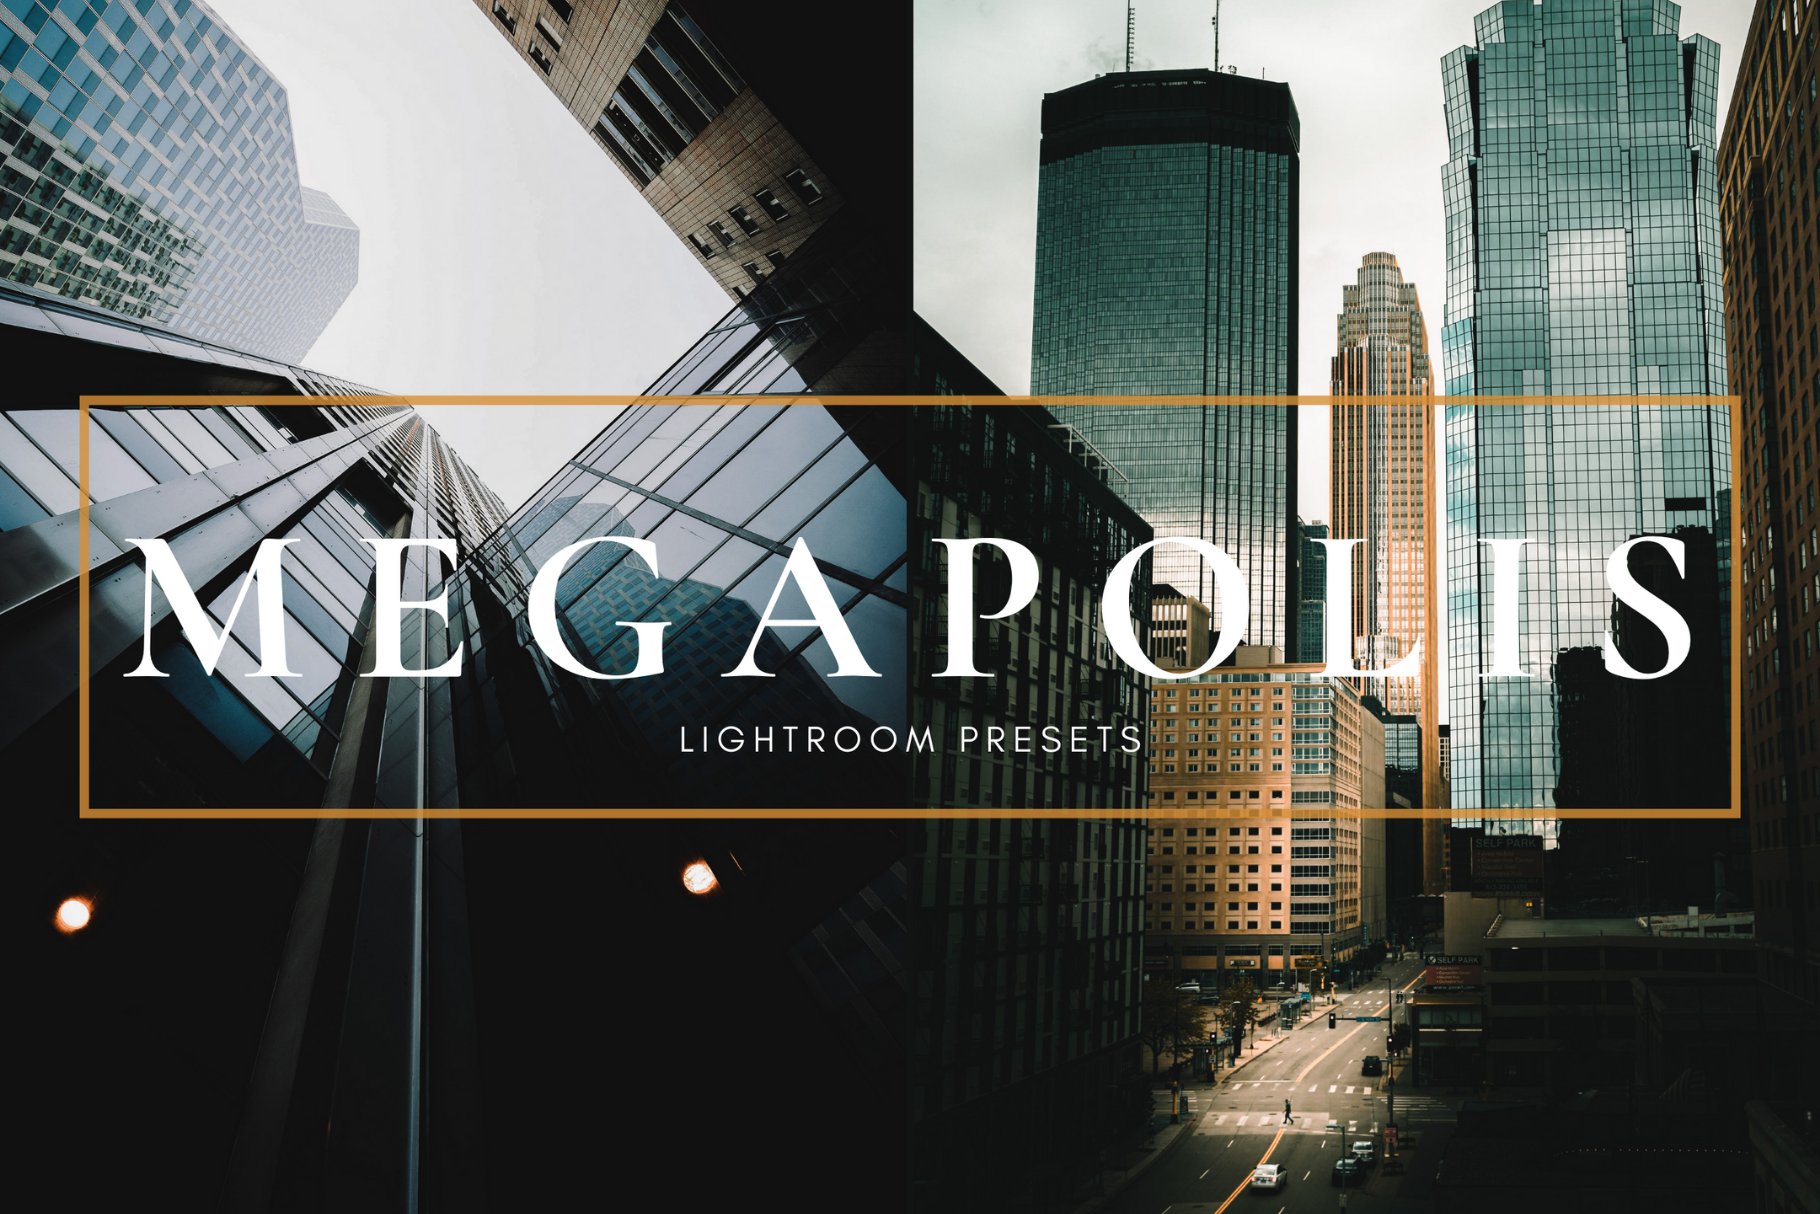 Megapolis Lightroom Presets 6465520